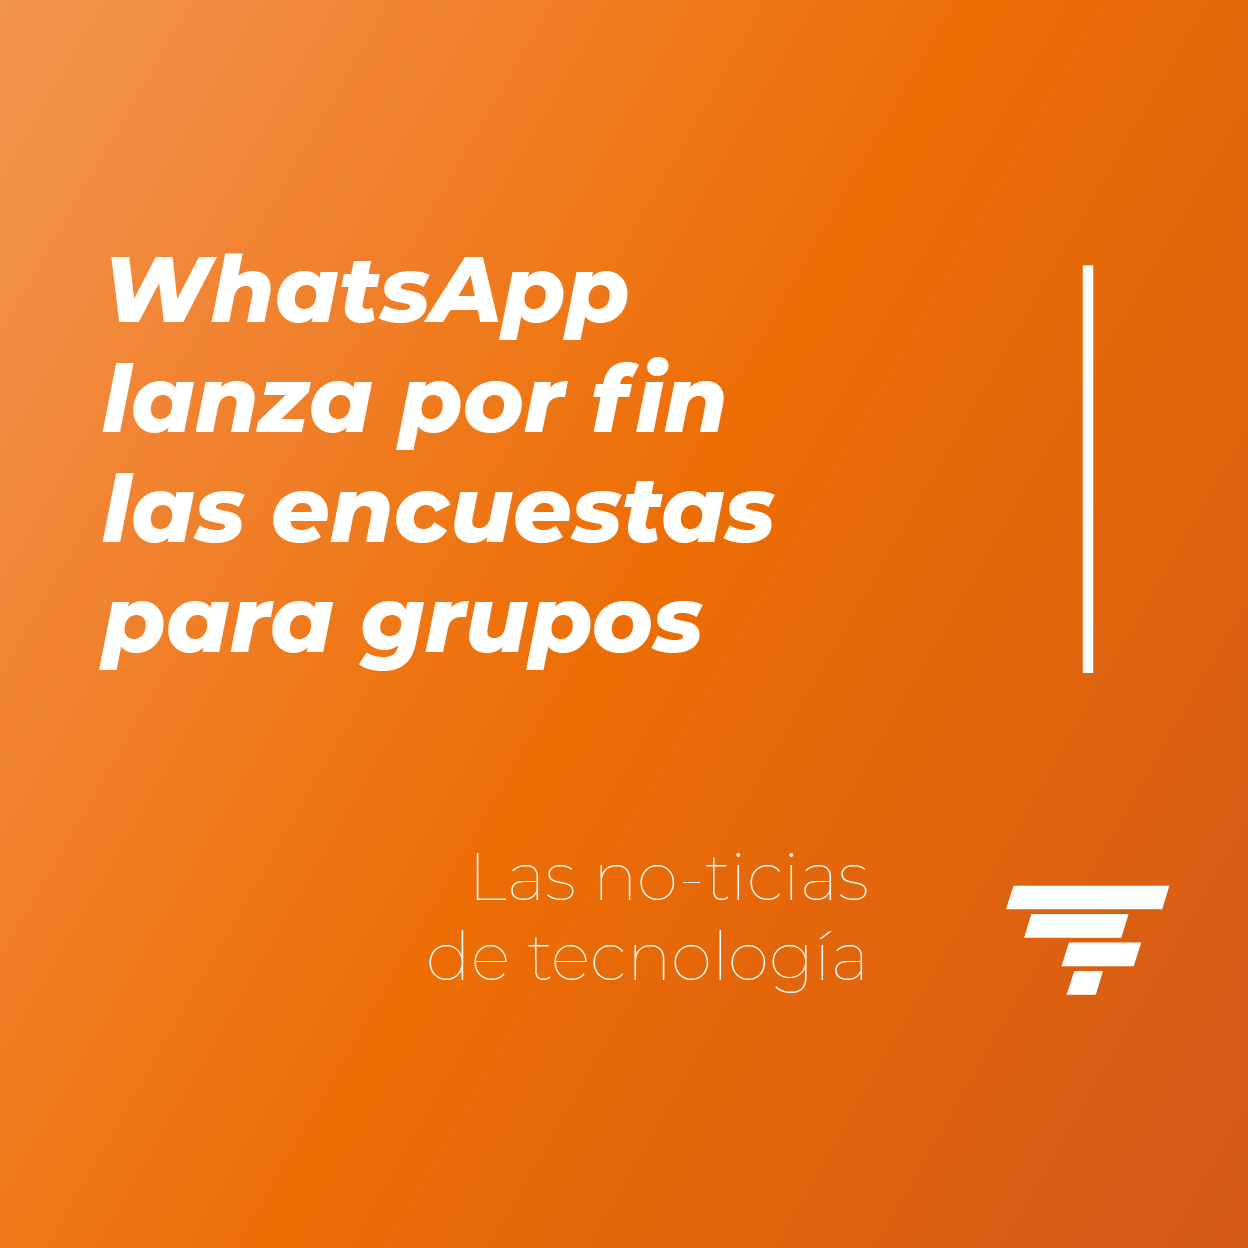 WhatsApp lanza las encuestas para grupos